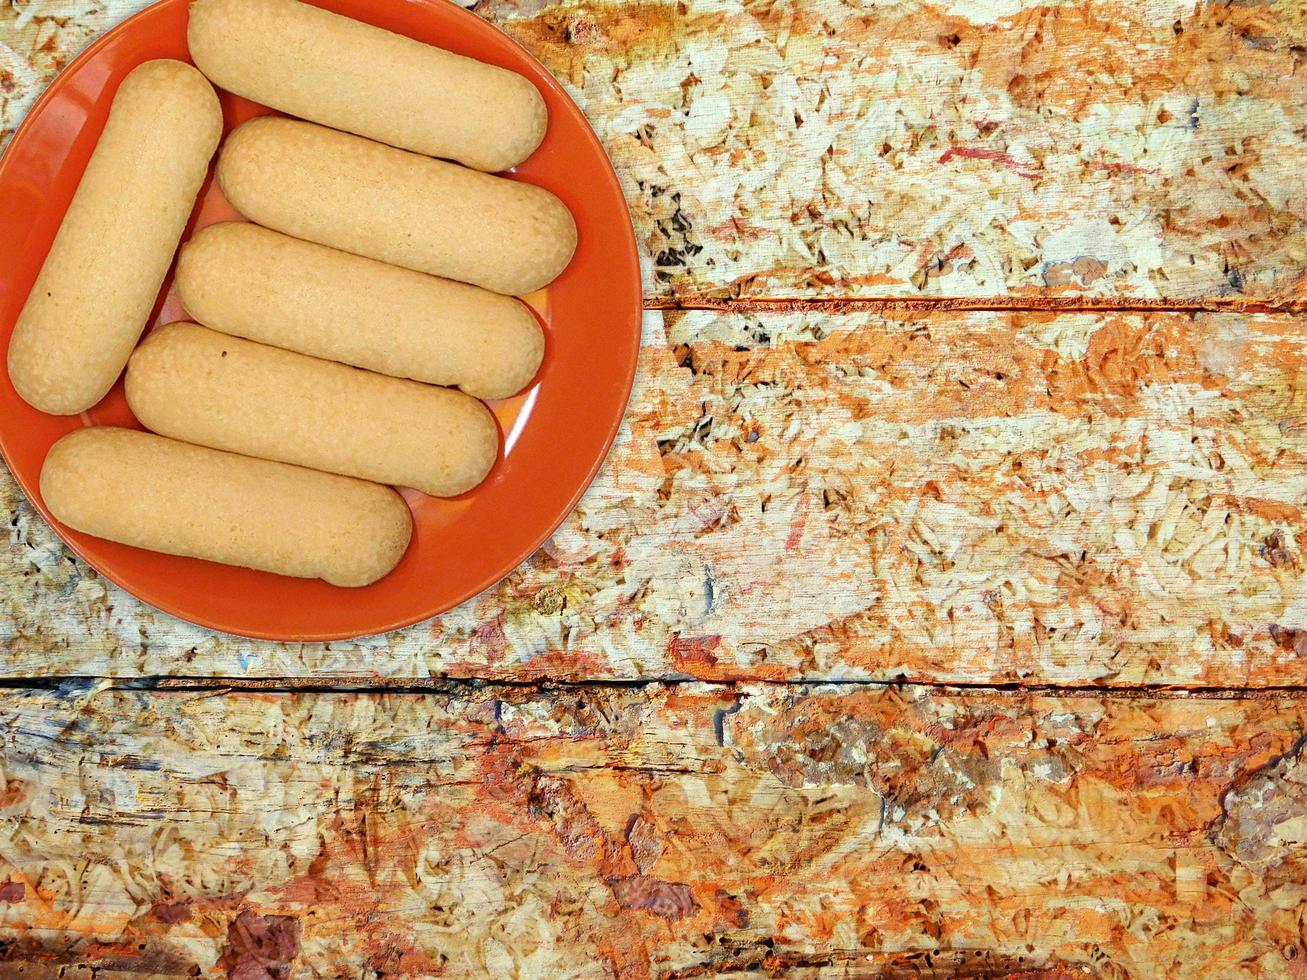 koekjes op een rode plaat op een houten tafel achtergrond foto